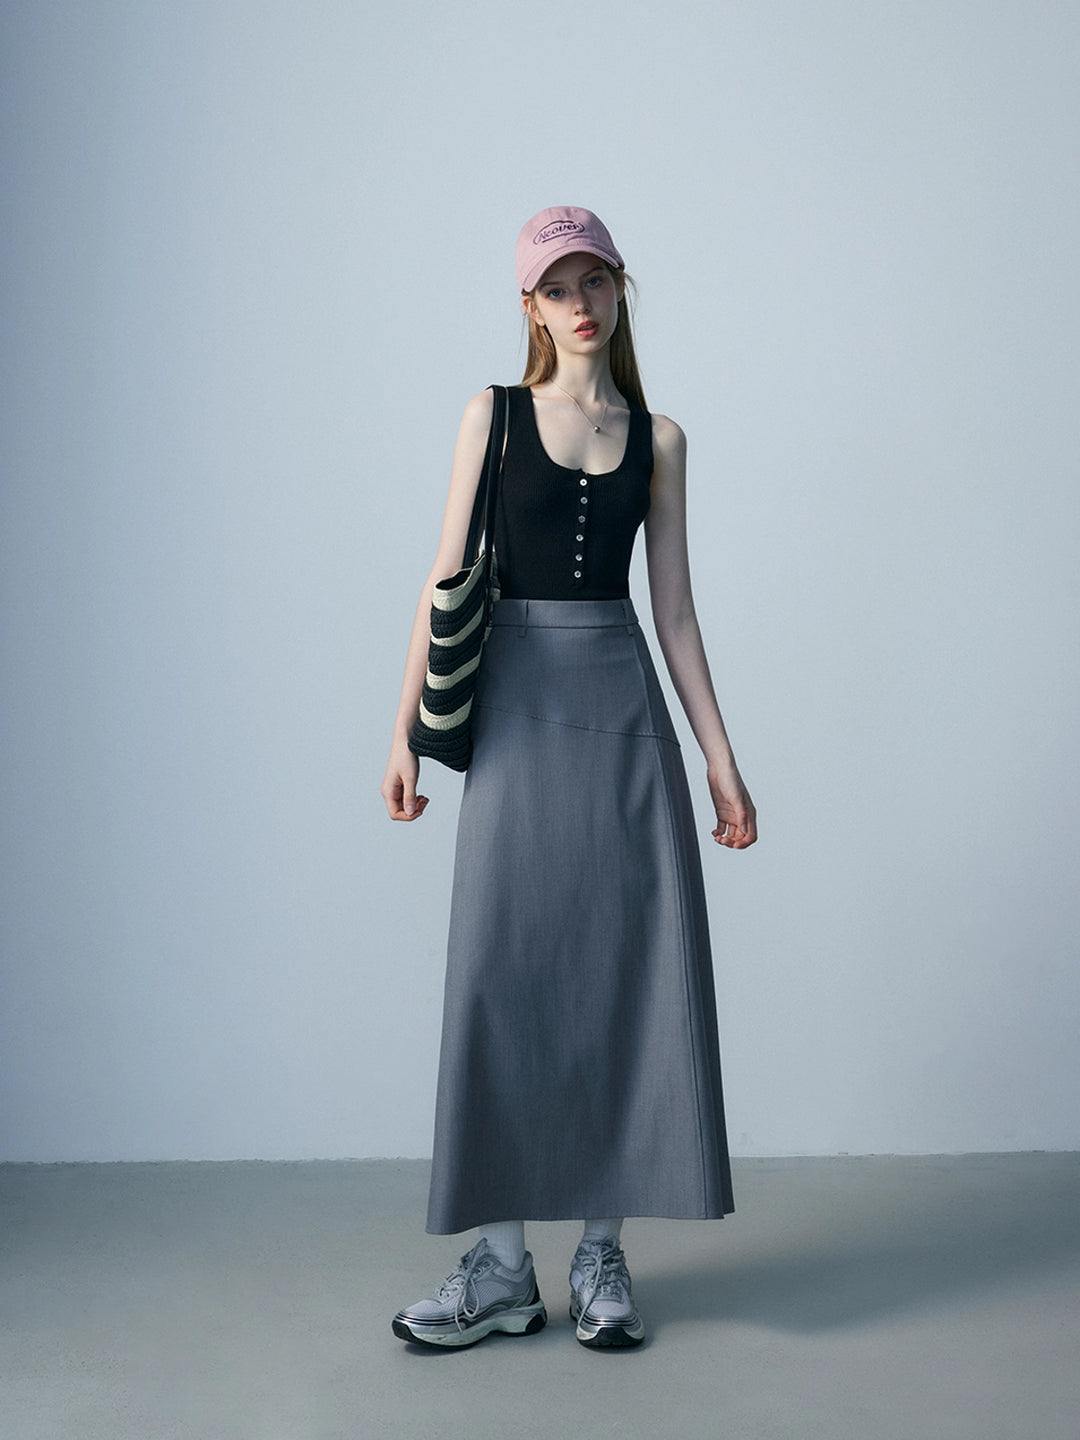 Women's High-Waisted Black A-Line Maxi Skirt